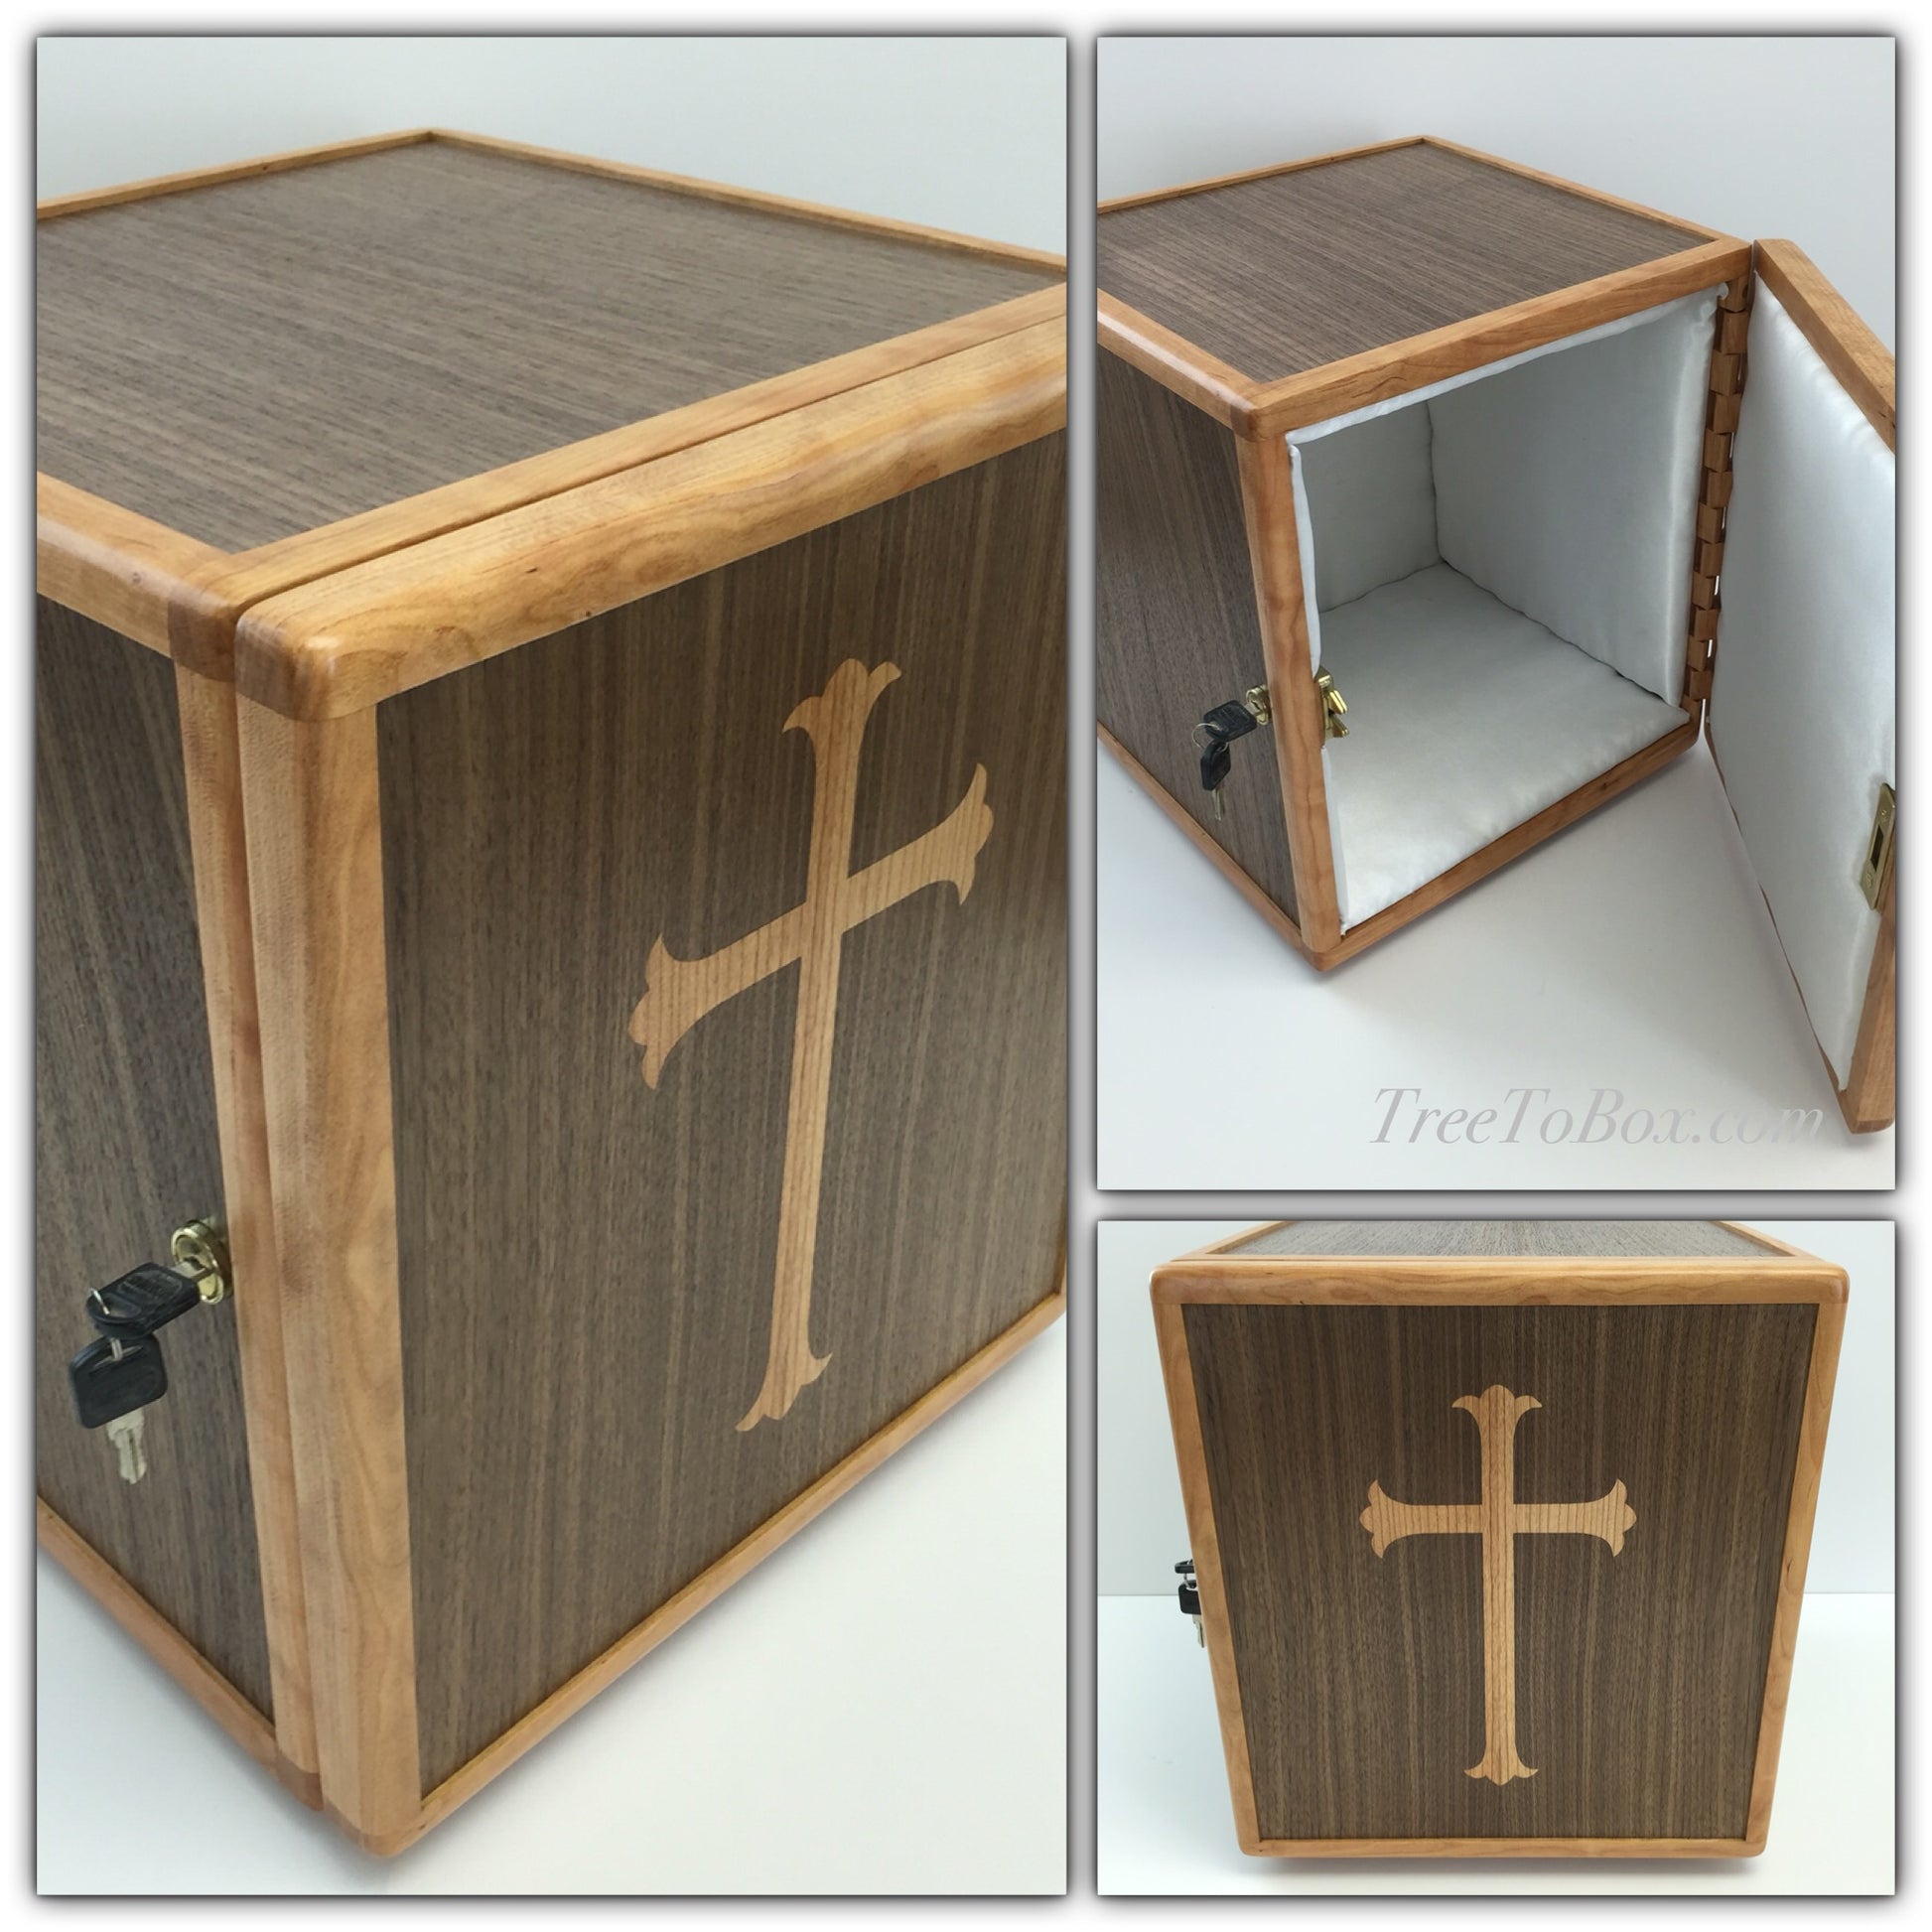 Wood Tabernacle - TreeToBox